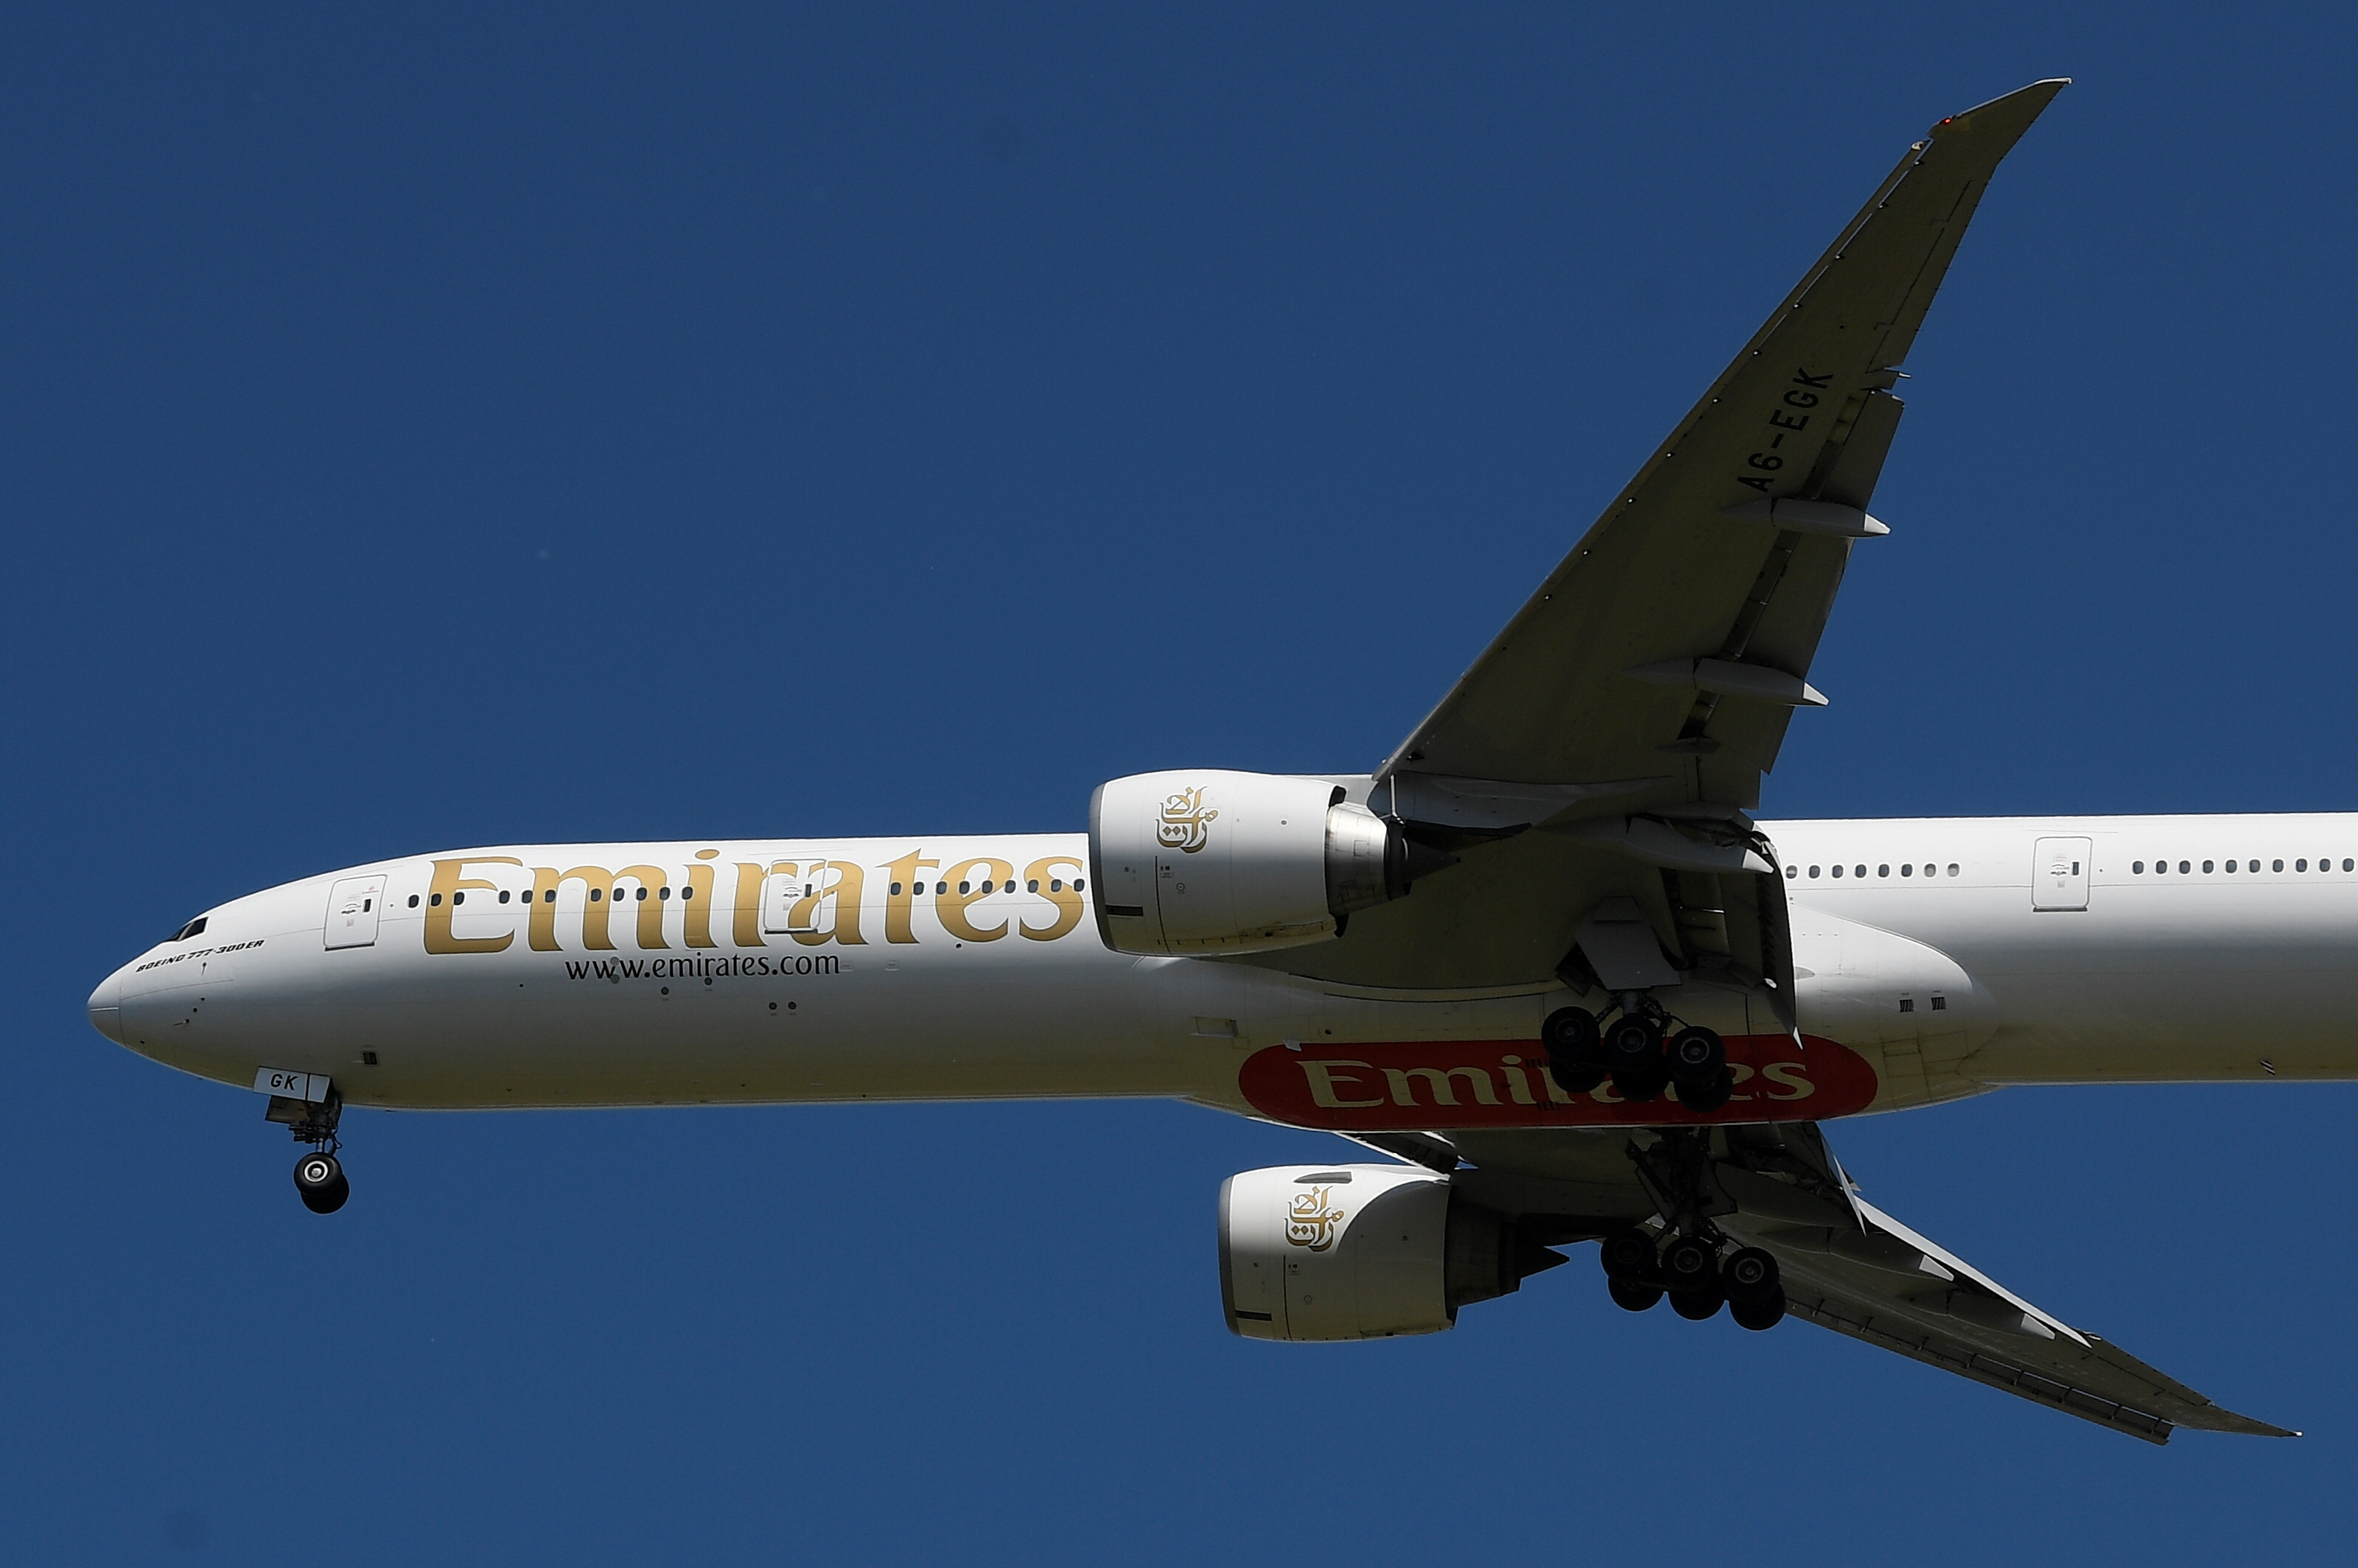 Aérien : portée par une forte demande, la compagnie Emirates voit son bénéfice annuel s'envoler